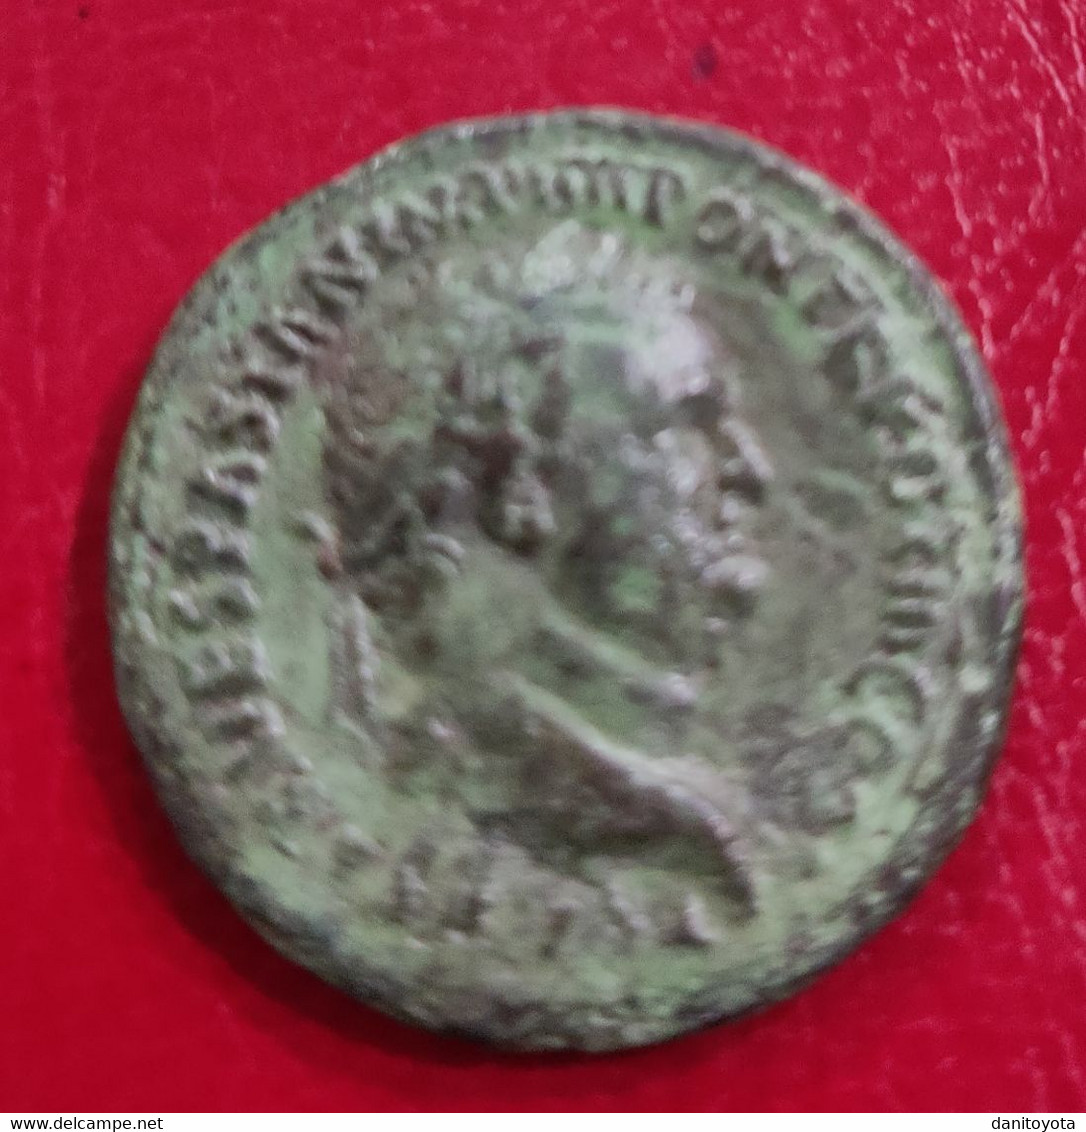 IMPERIO ROMANO. AÑO 72 D.C. DUPONDIO. TITO. PESO 10.7 GR.  REF A/F. - La Dinastía Flavia (69 / 96)